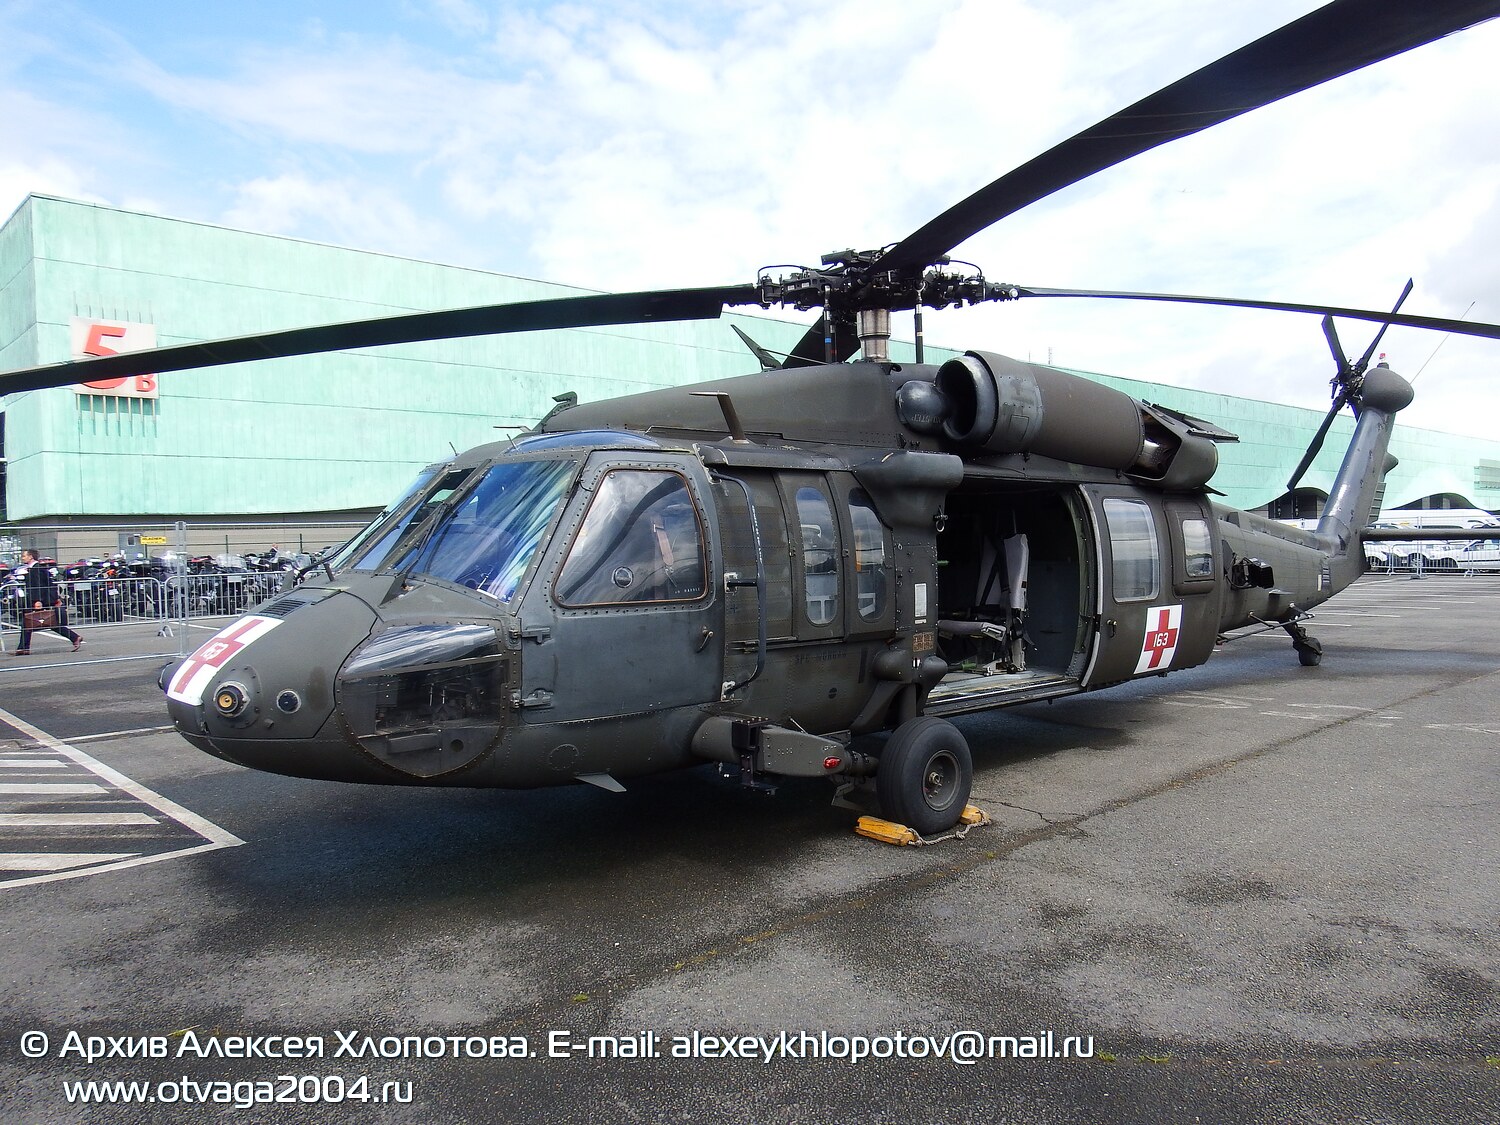 Вертолет UH-60A «Black Hawk» - фотообзор и фотодетализация